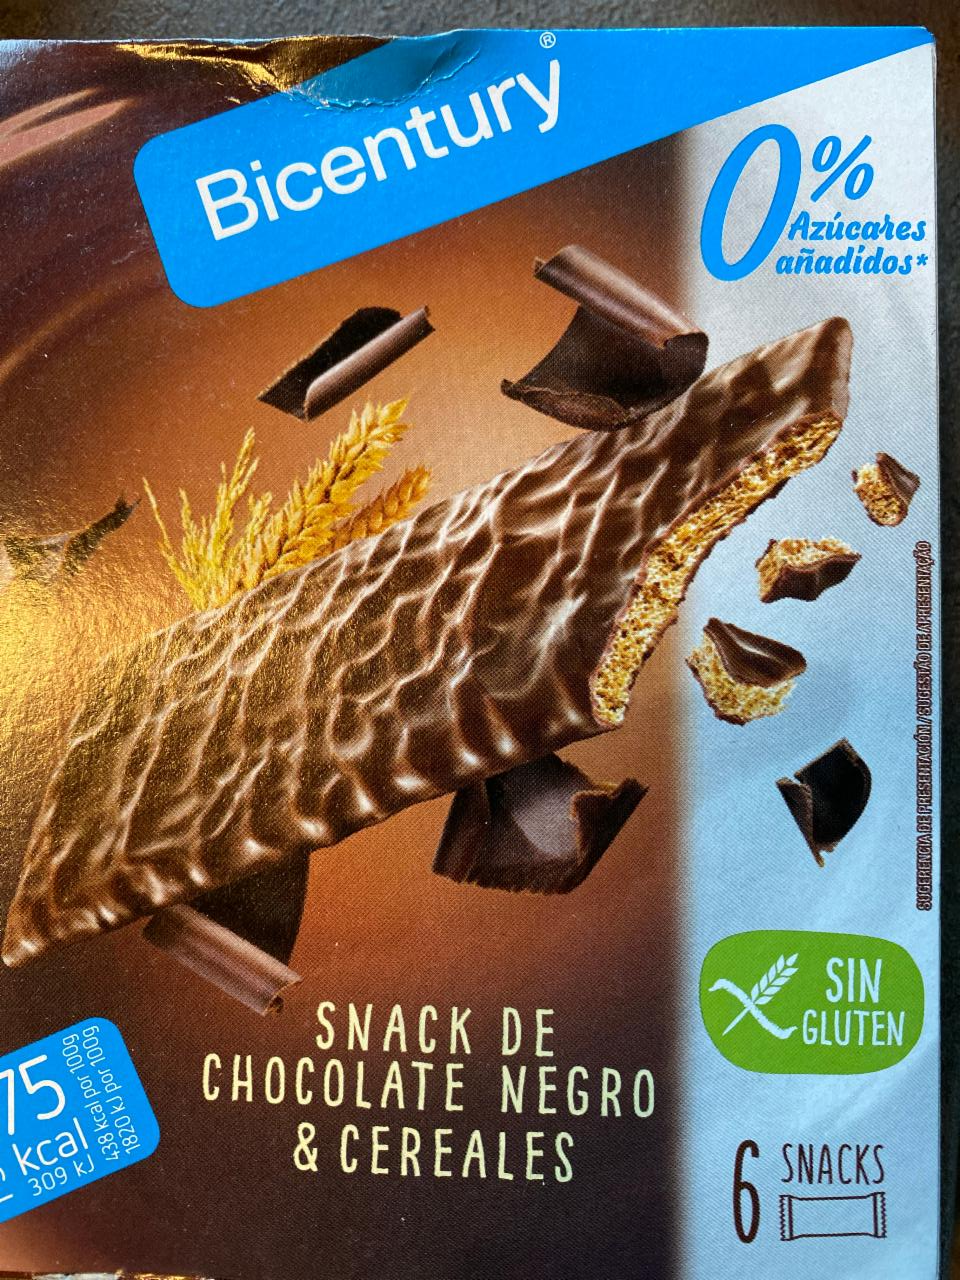 Fotografie - Snacks de Chocolate Negro & Cereales 0% azúcares añadidos Bicentury